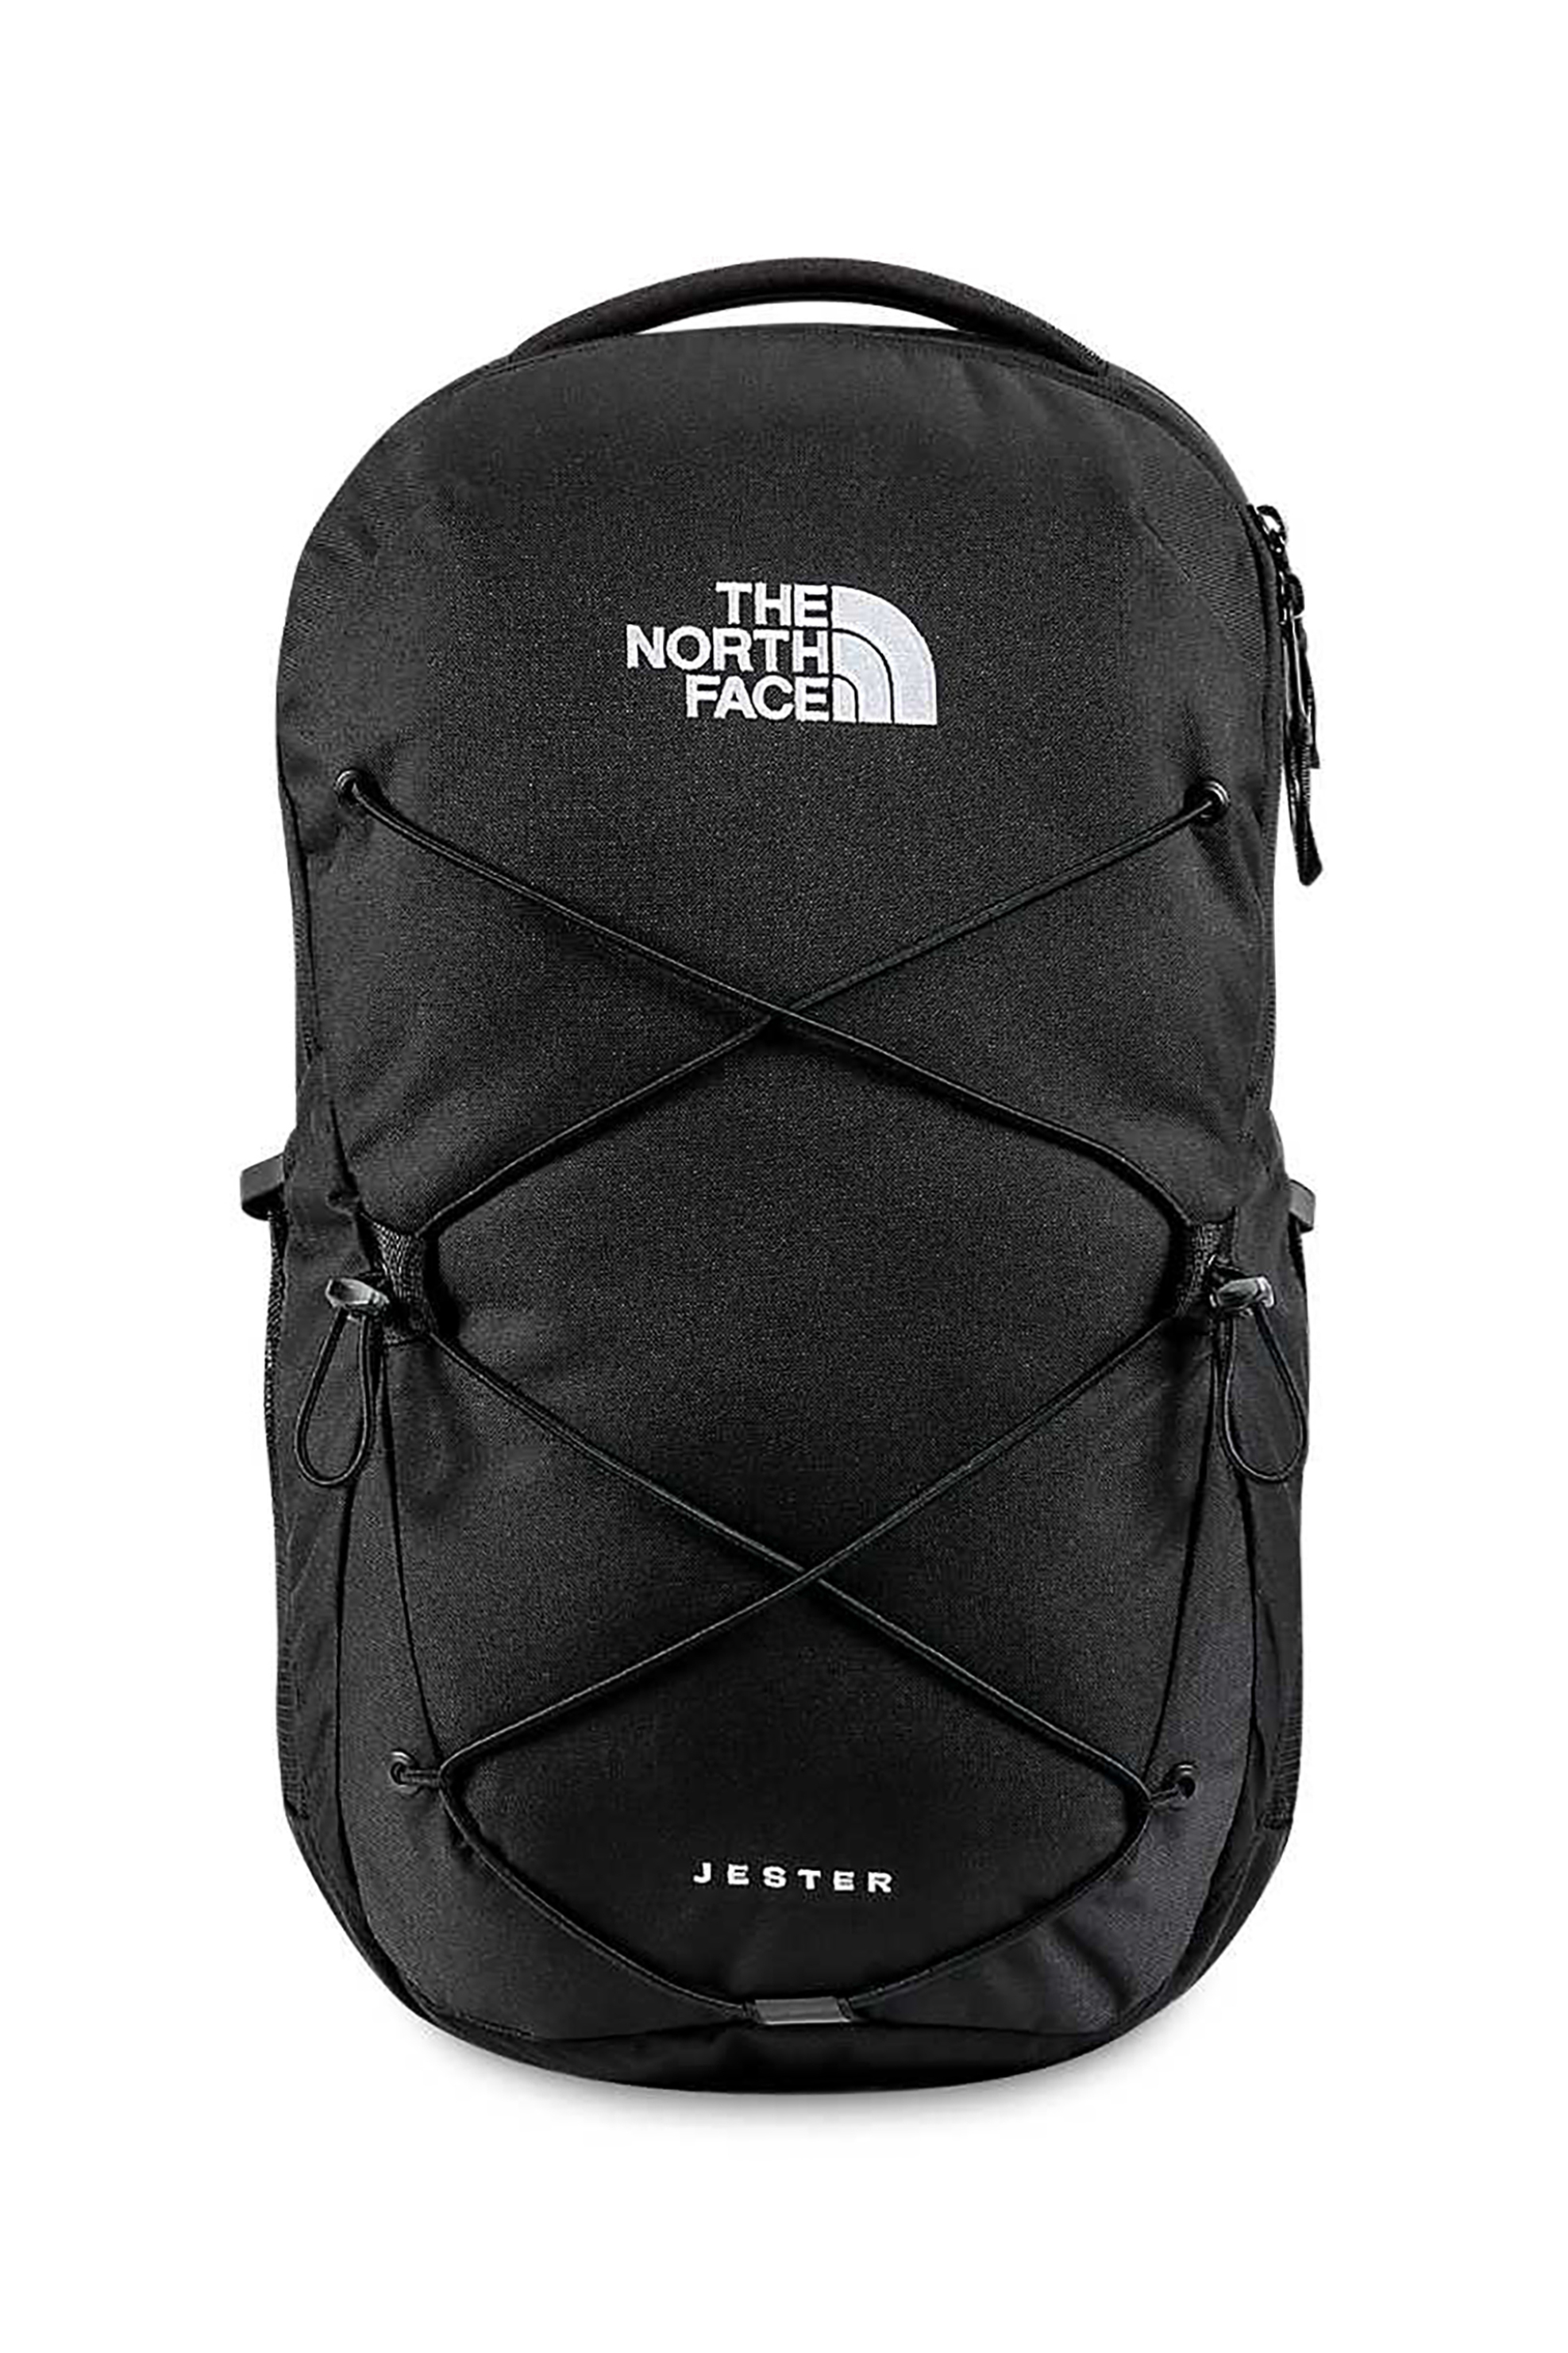 Ανδρική Μόδα > Ανδρικές Τσάντες > Ανδρικά Σακίδια & Backpacks The North Face unisex backpack "Jester" - NF0A3VXFJK31 Μαύρο